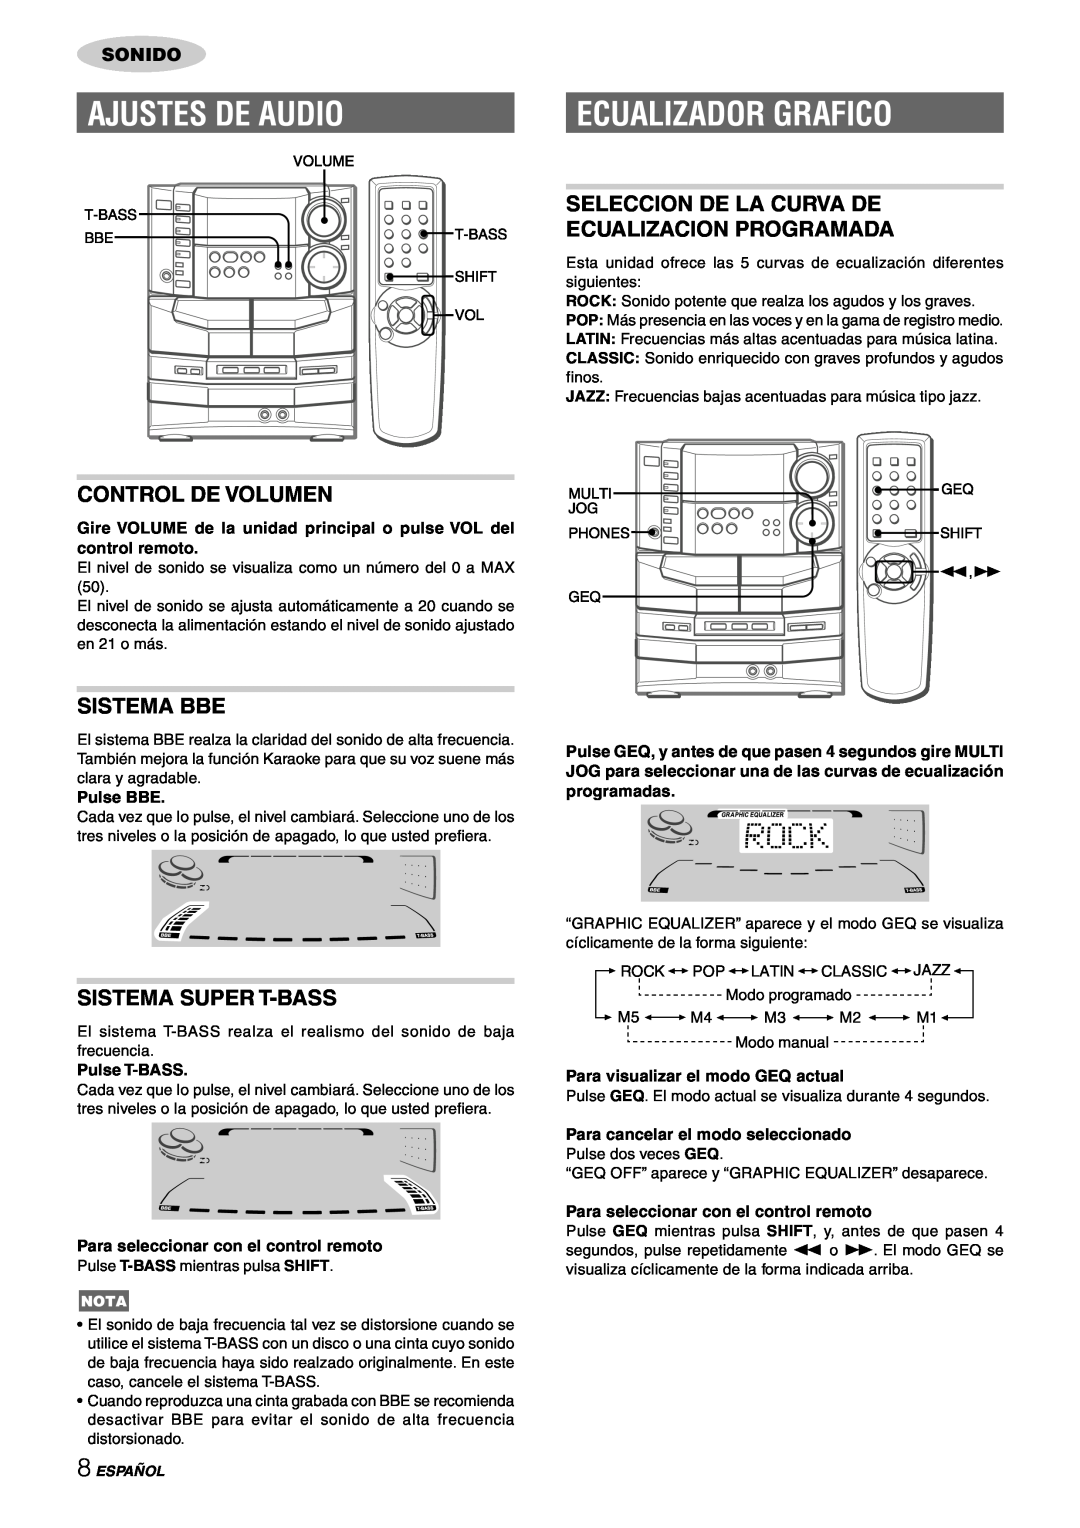 Sony NSX-AJ80 Ajustes De Audio, Ecualizador Grafico, Seleccion De La Curva De, Ecualizacion Programada, Control De Volumen 